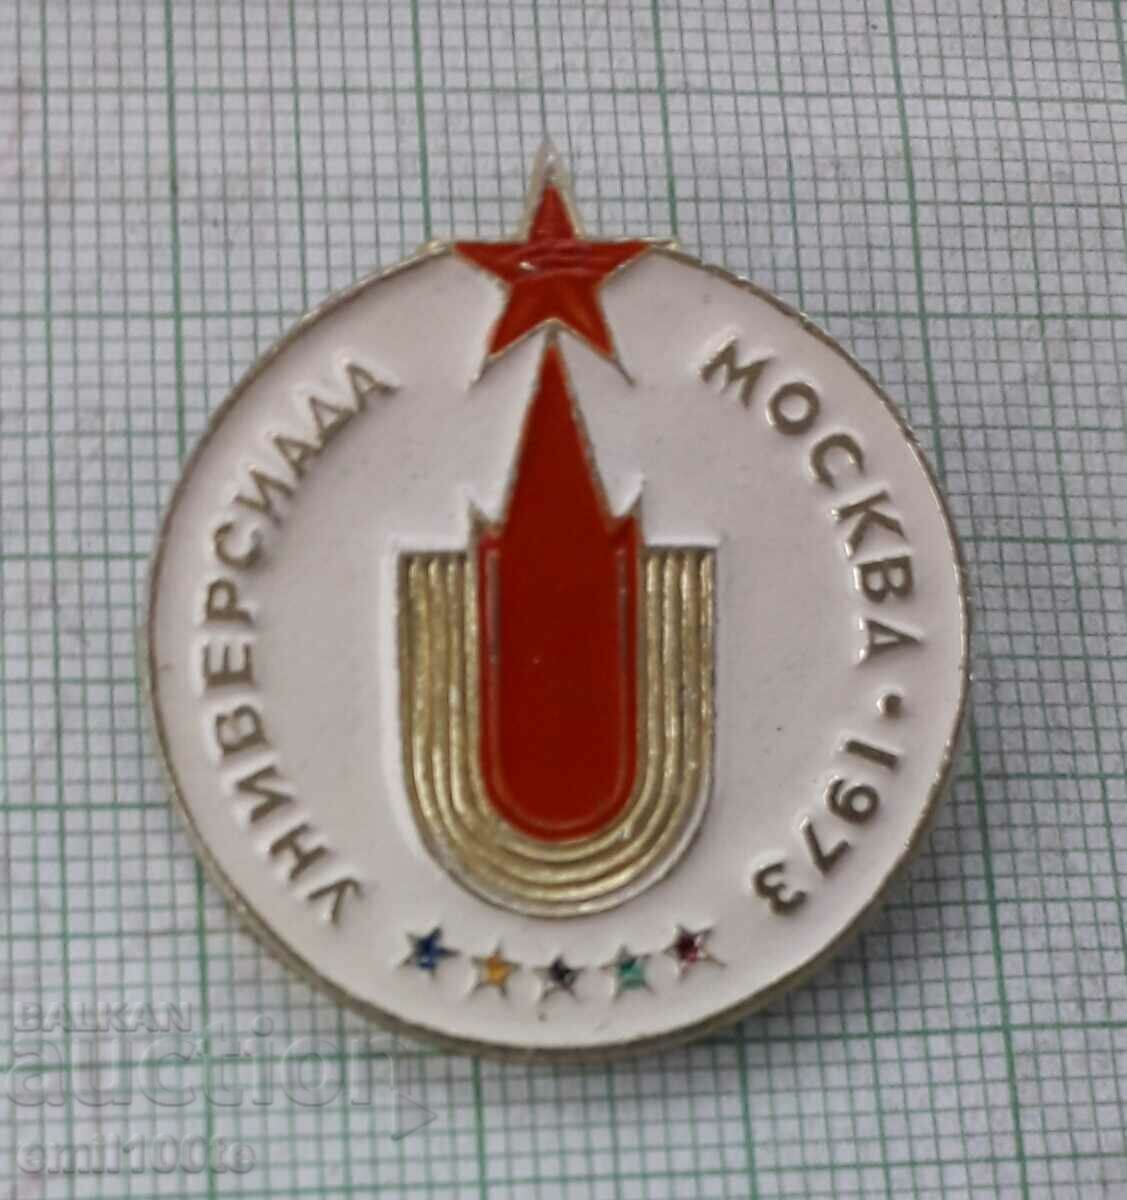 Значка- Универсиада Москва 1973